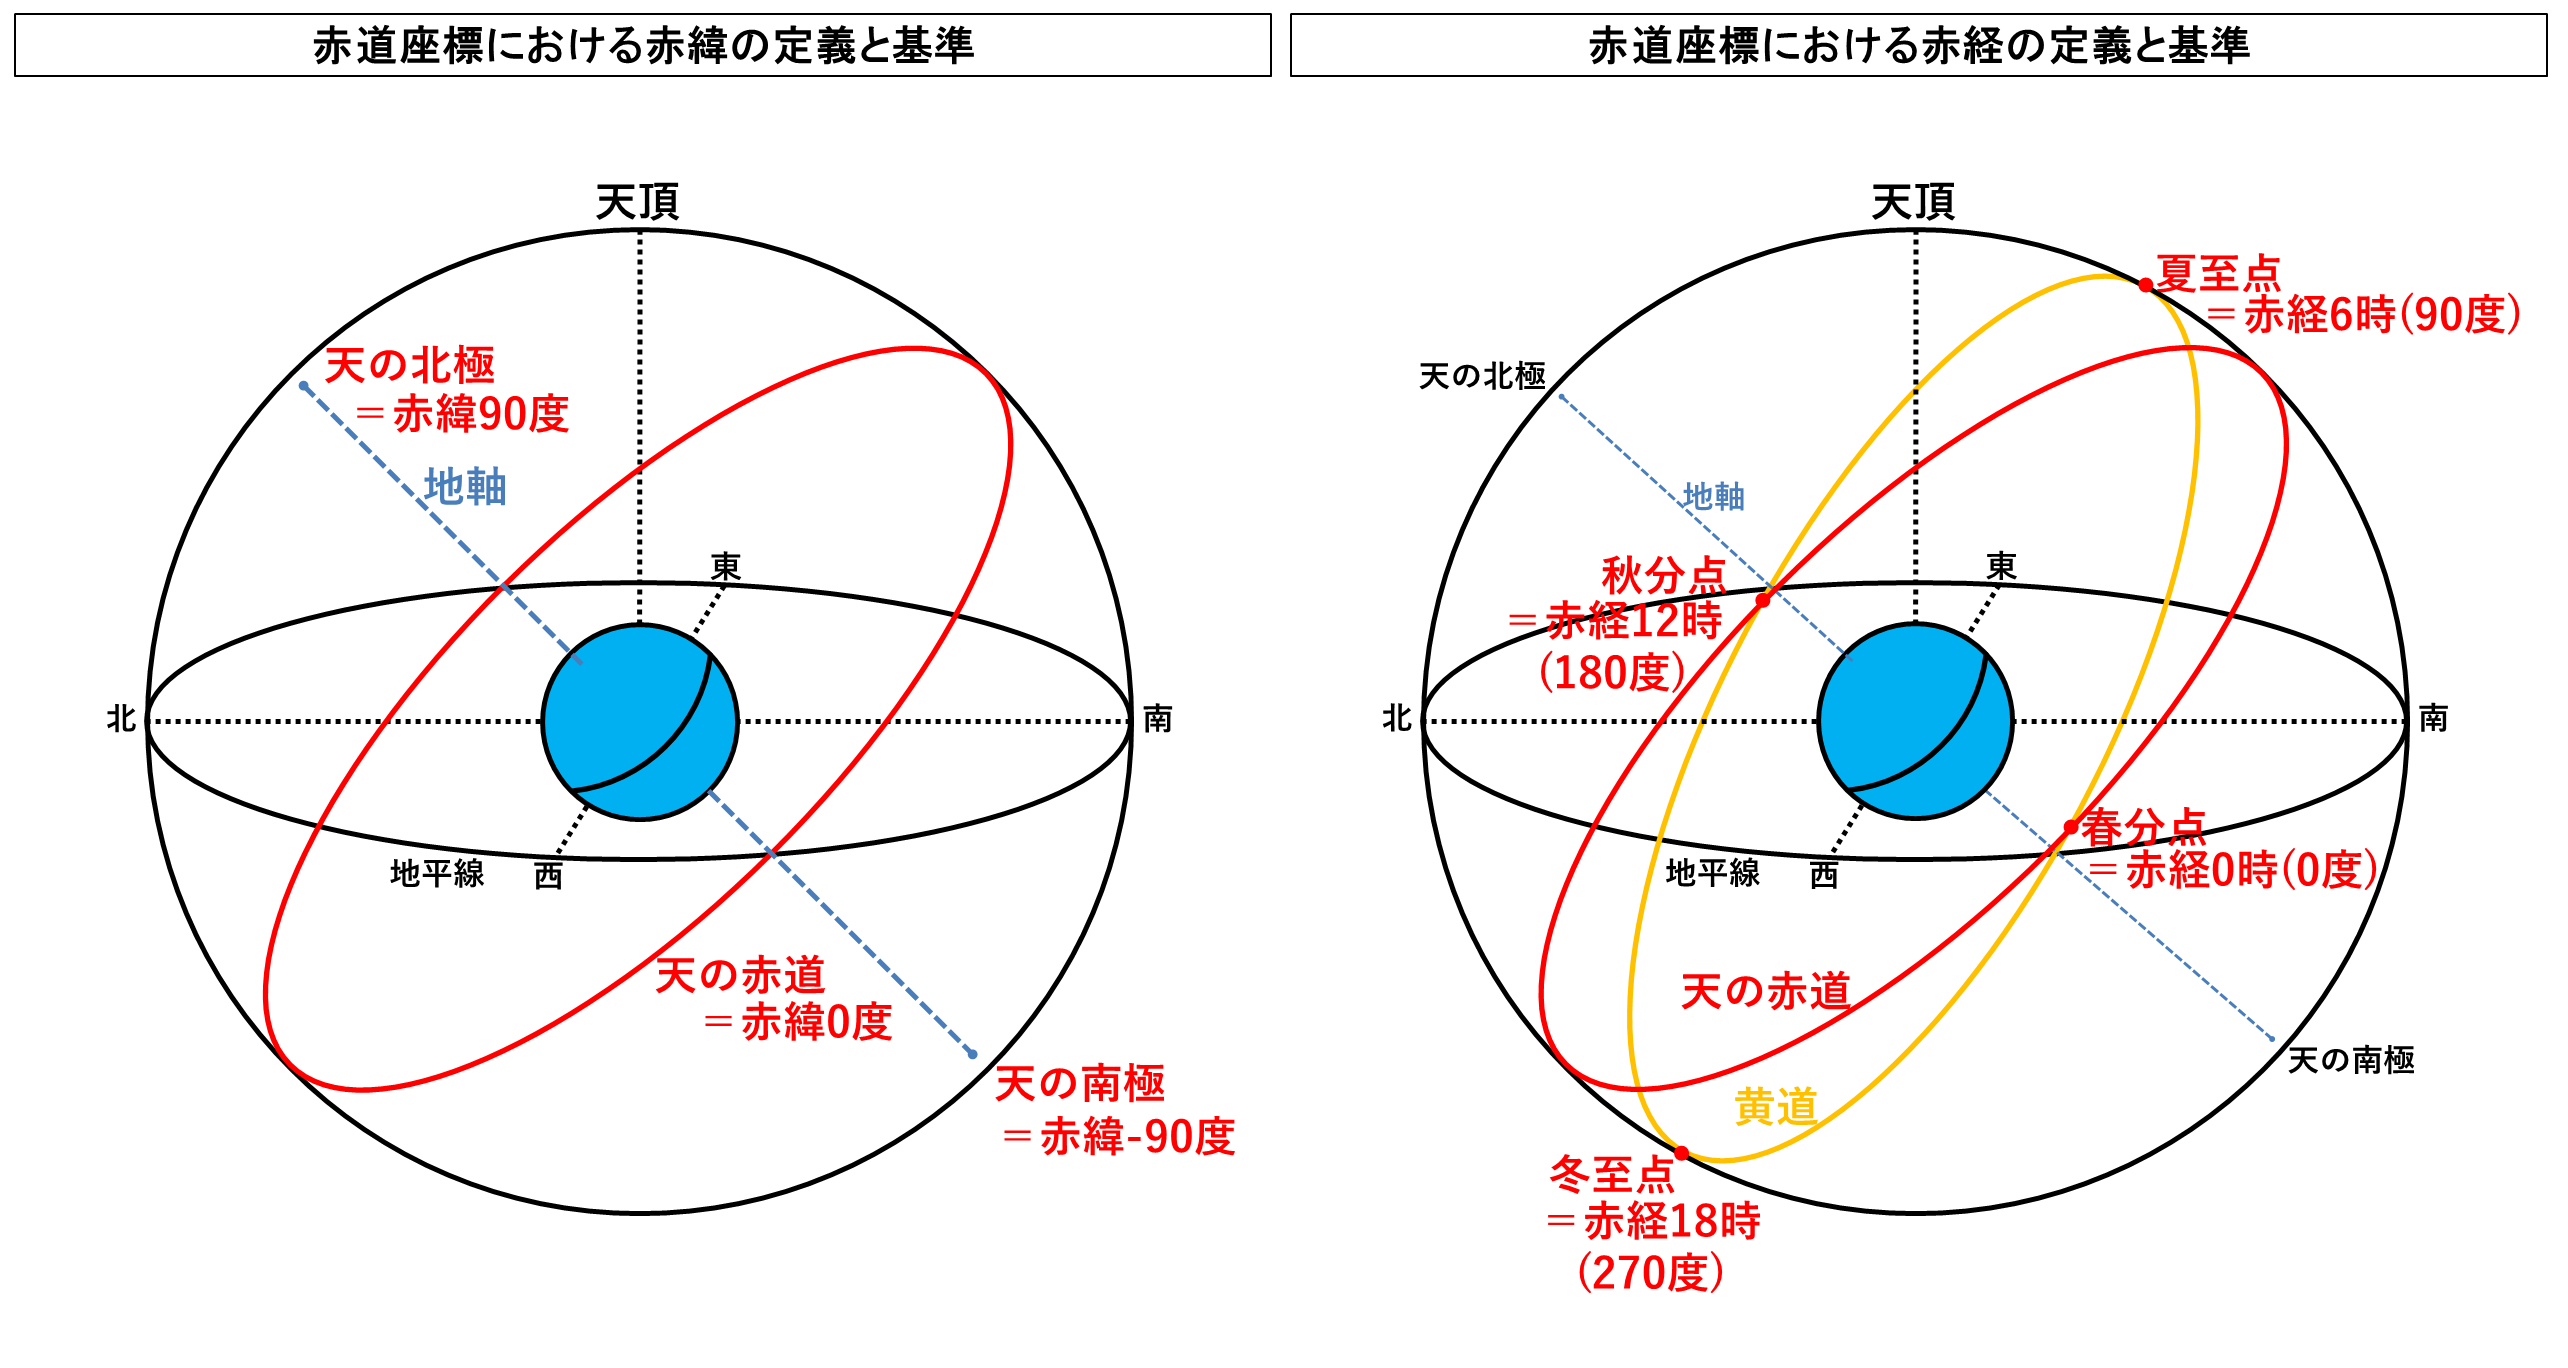 赤緯と赤経の違いとは？赤道座標において天球の緯度と経度を定める二つの座標の定義と具体的特徴の違いのまとめ